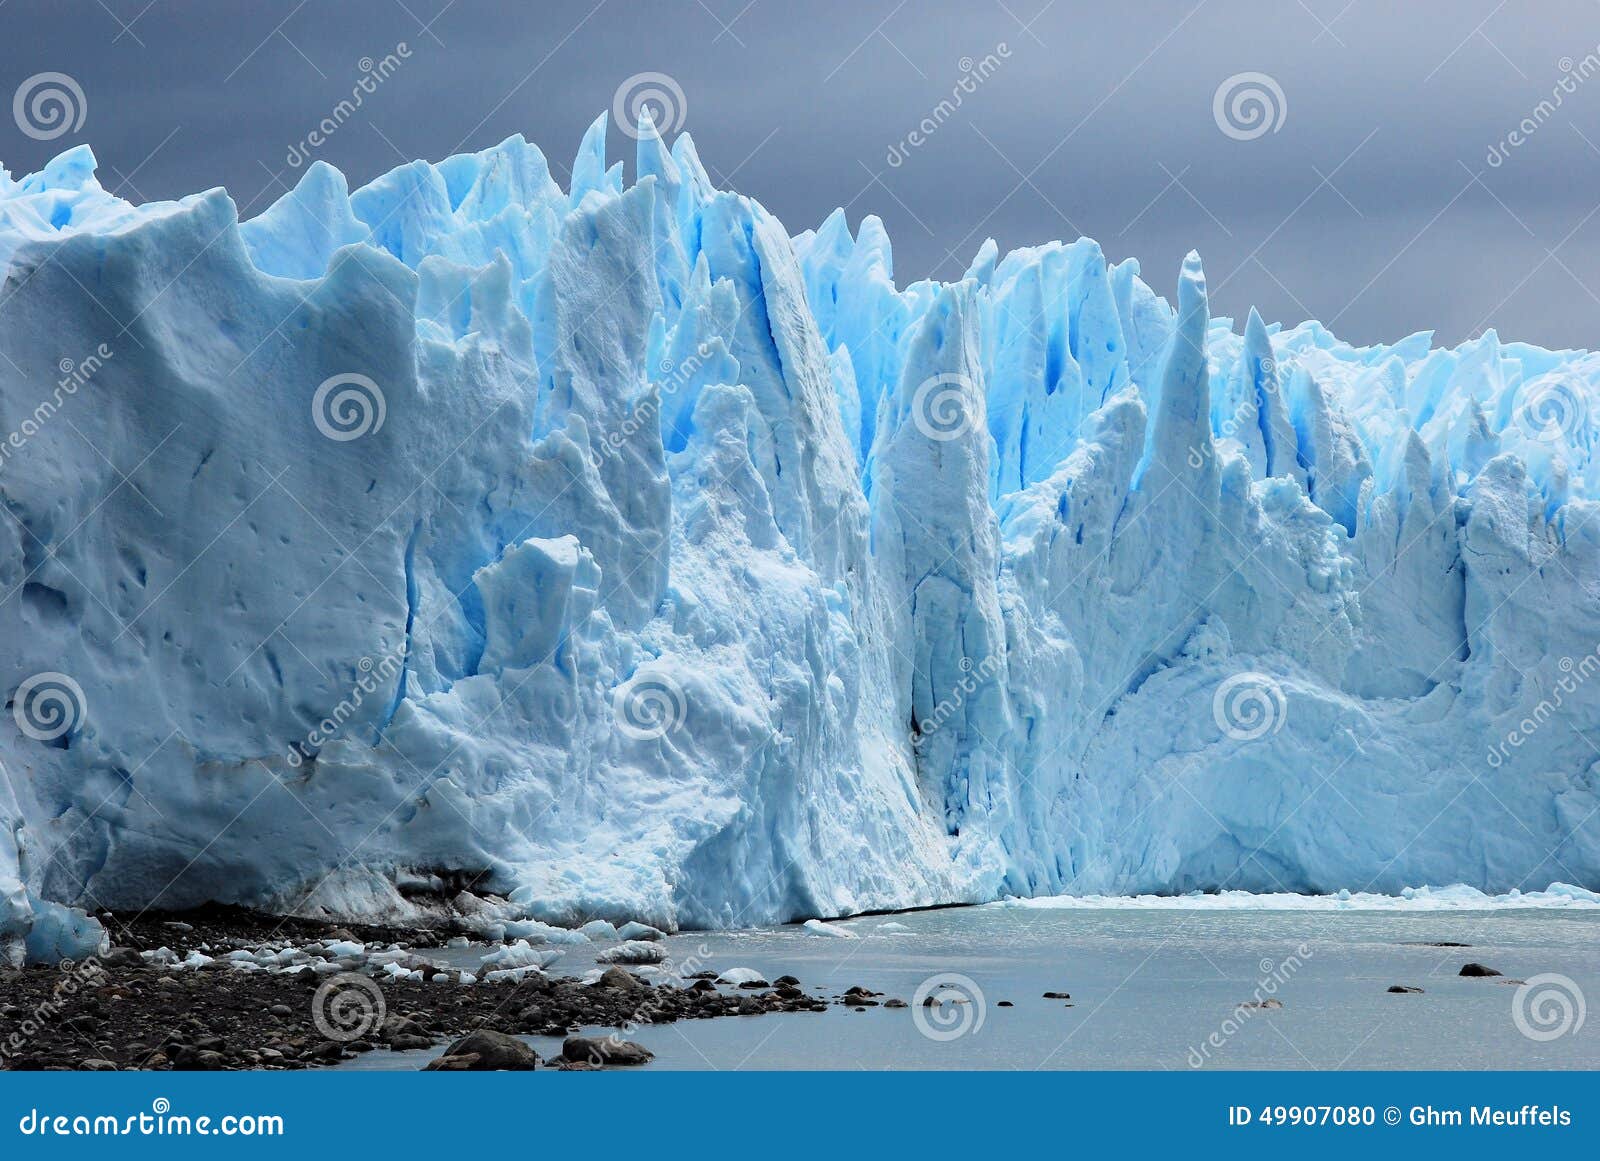 glacial ice perito moreno glacier from argentino lake - argentina